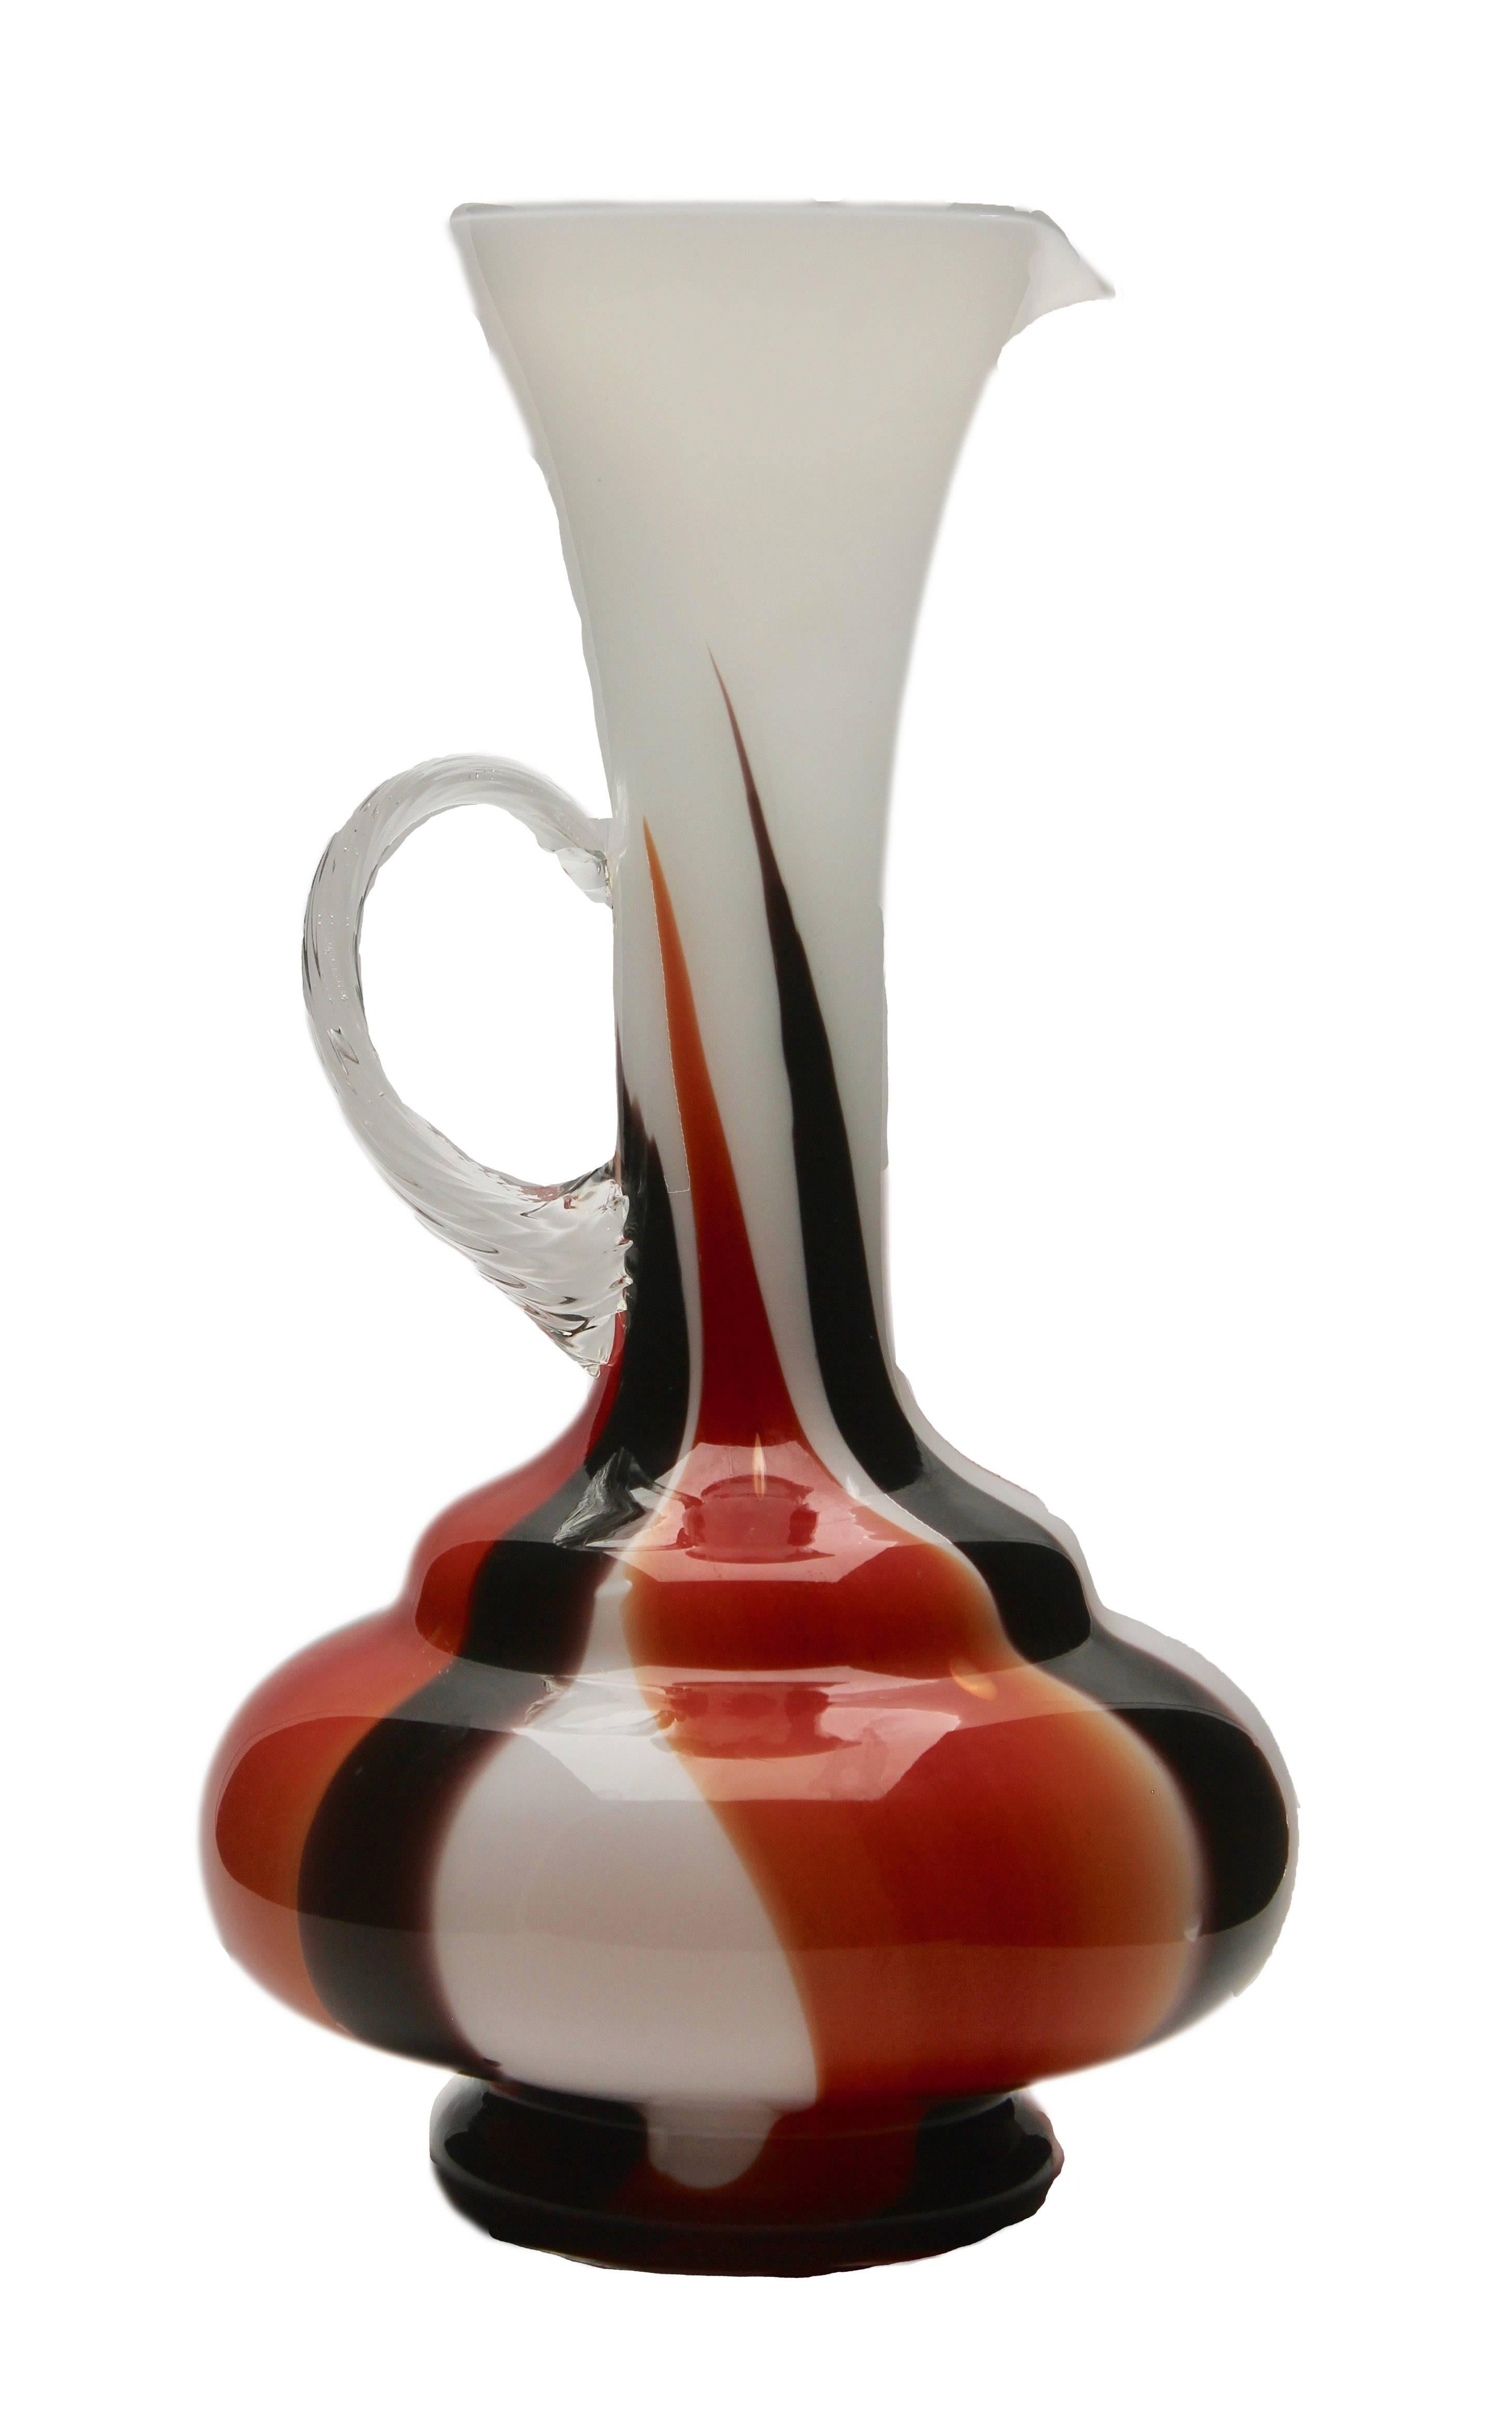 Vieux pichet vase par Opaline di Florence. Décor noir, rouge et blanc très contrasté
C'est une couleur et une taille rares, un must pour tout collectionneur.
C'est tout simplement magnifique.
 

    

    
  